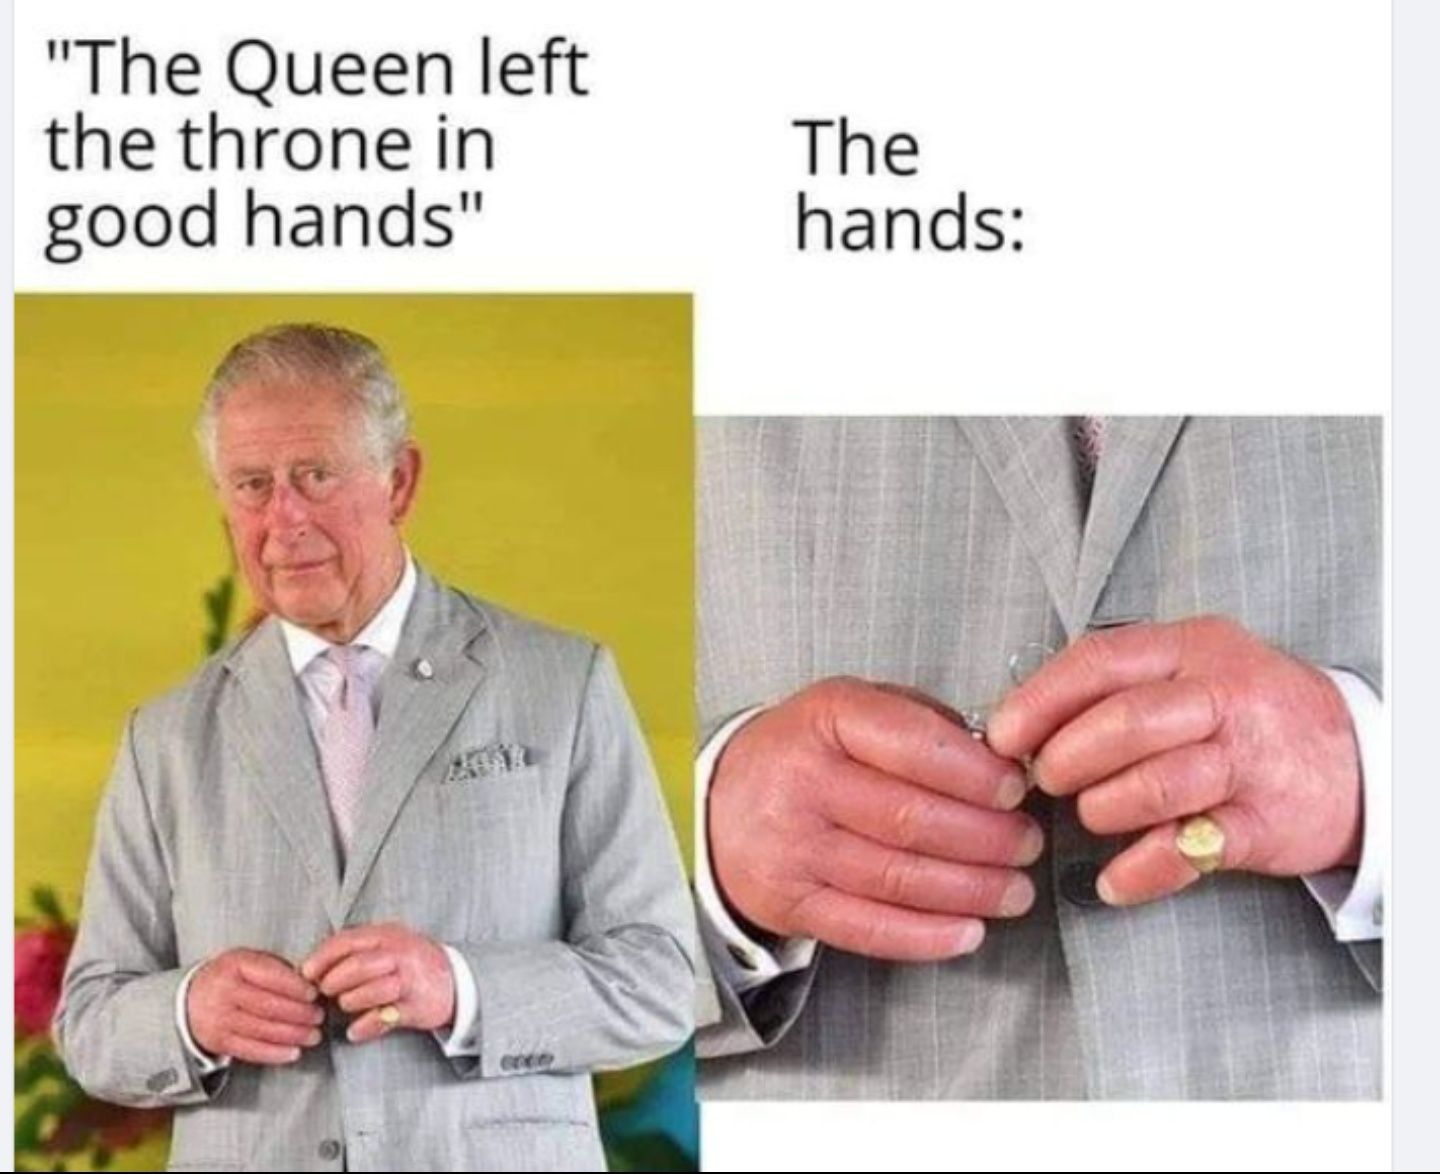 Good hands